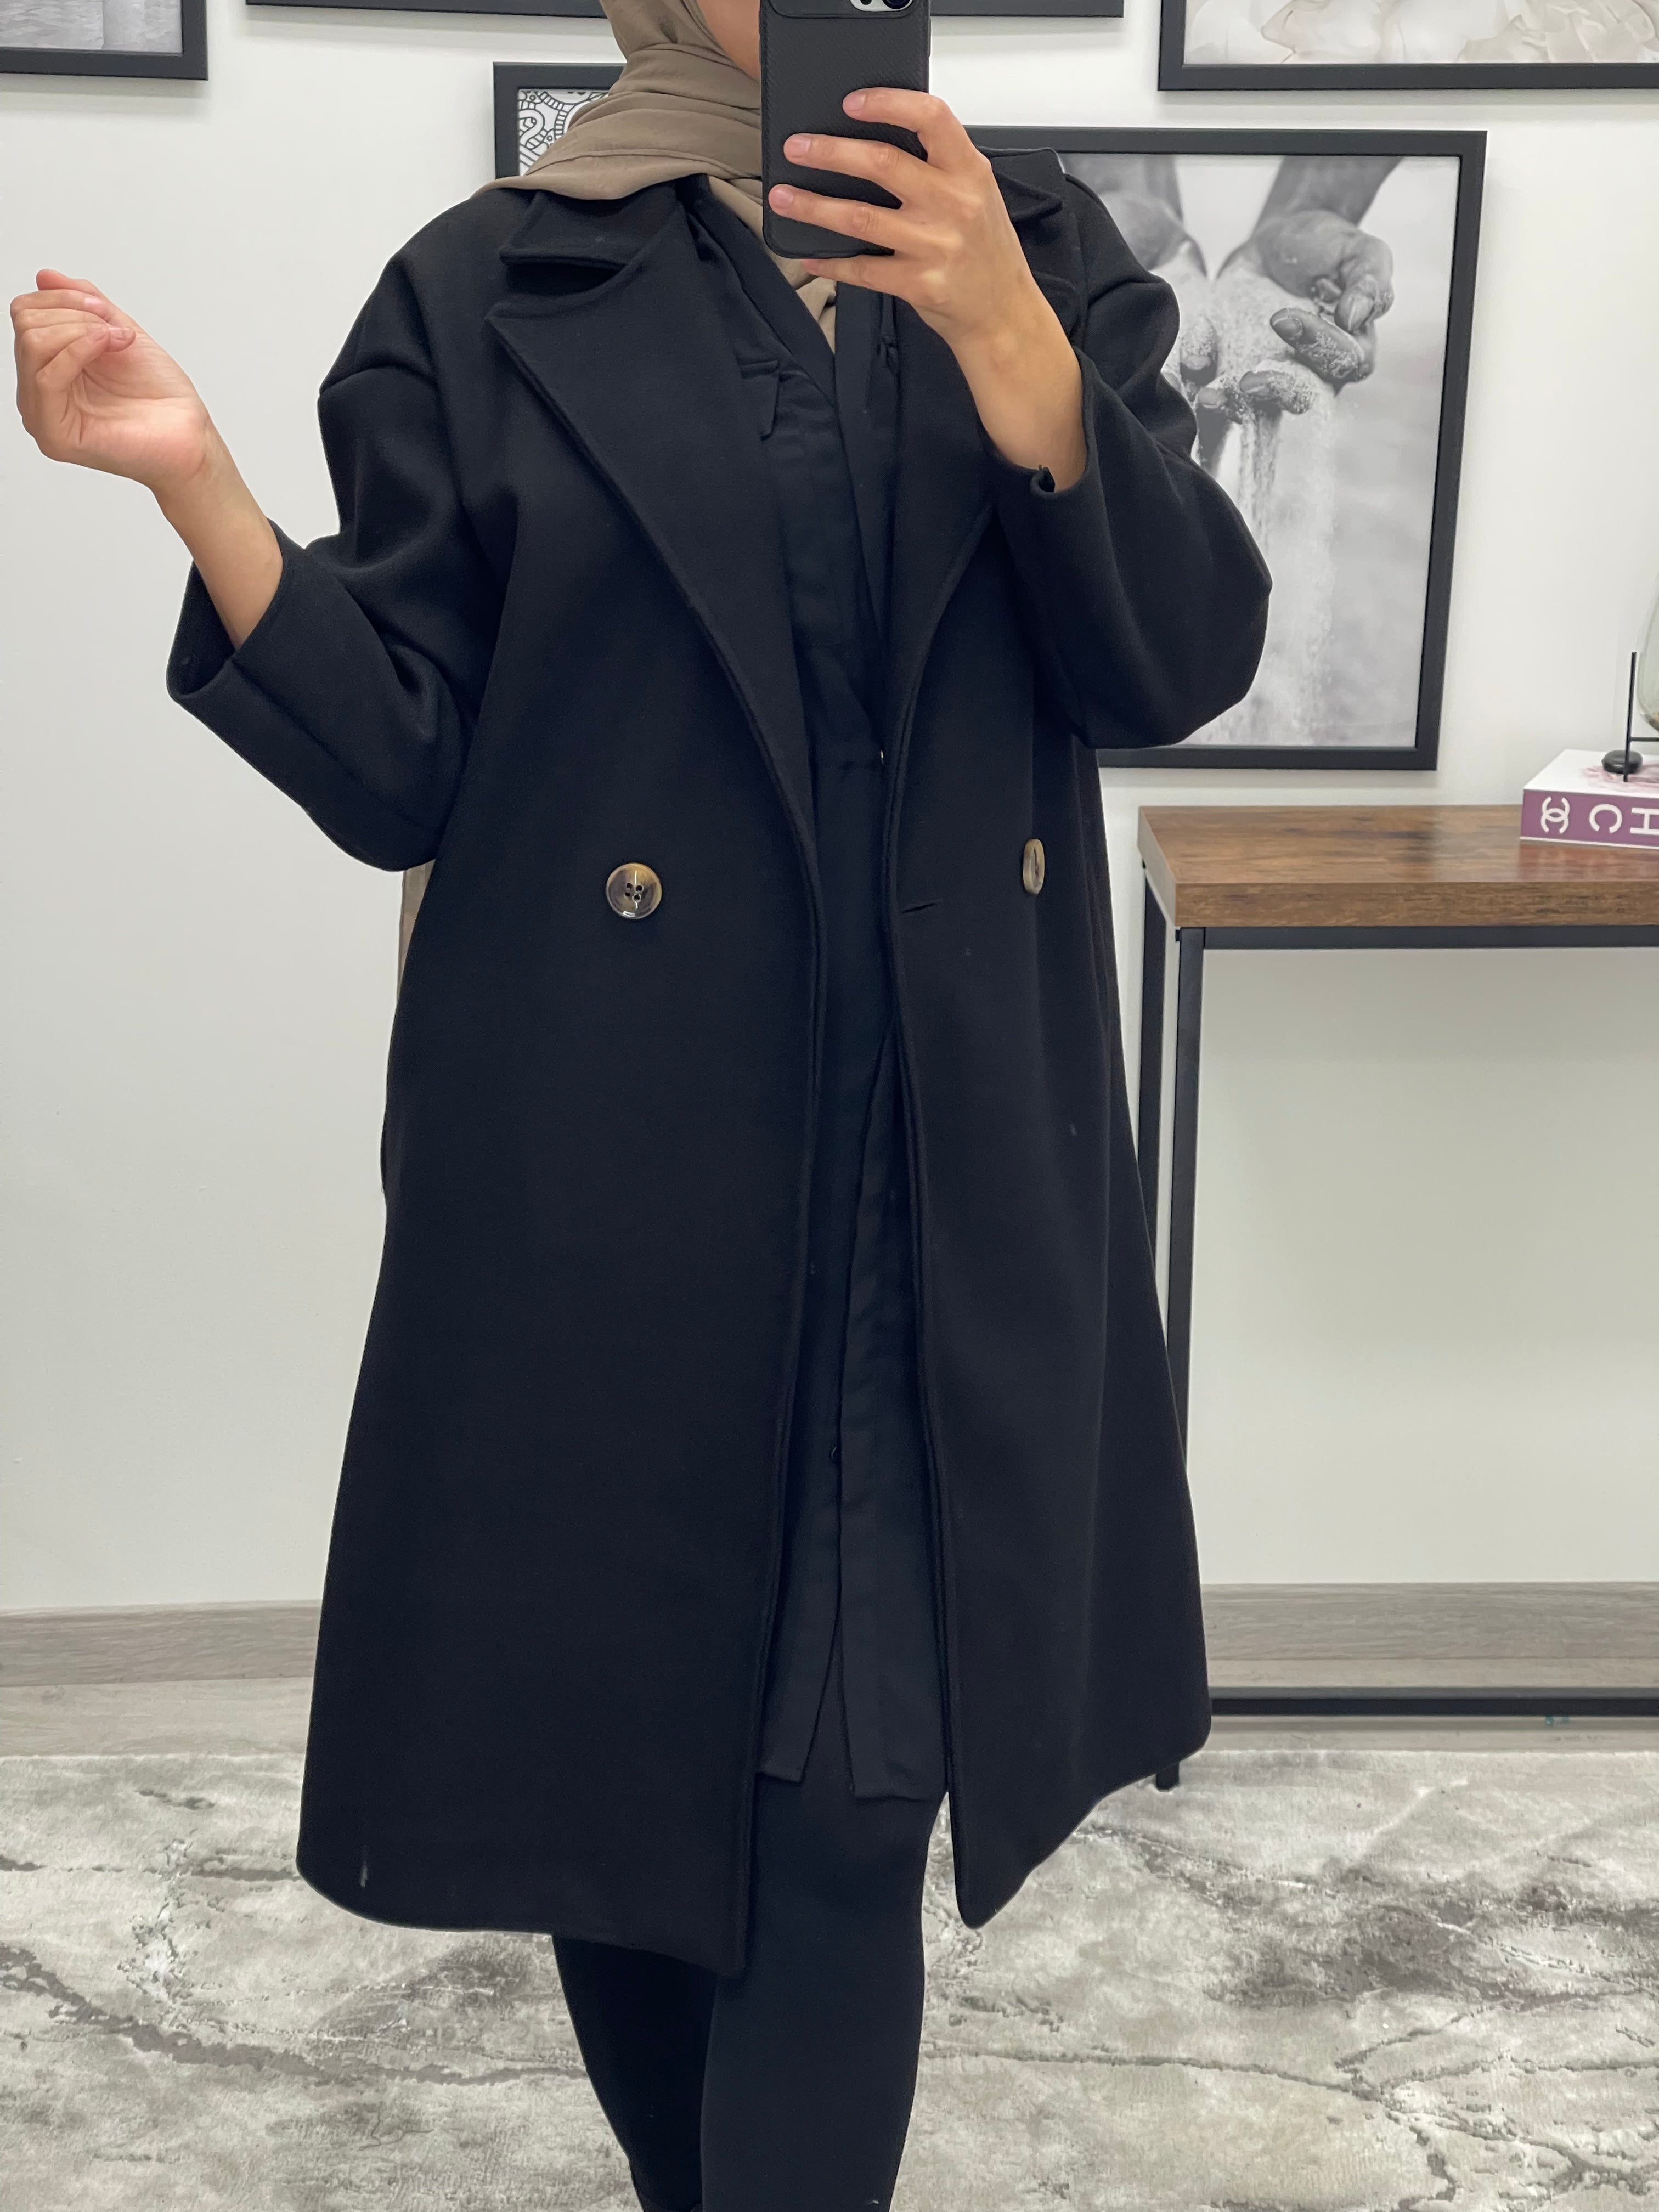 manteau oversize femme noir